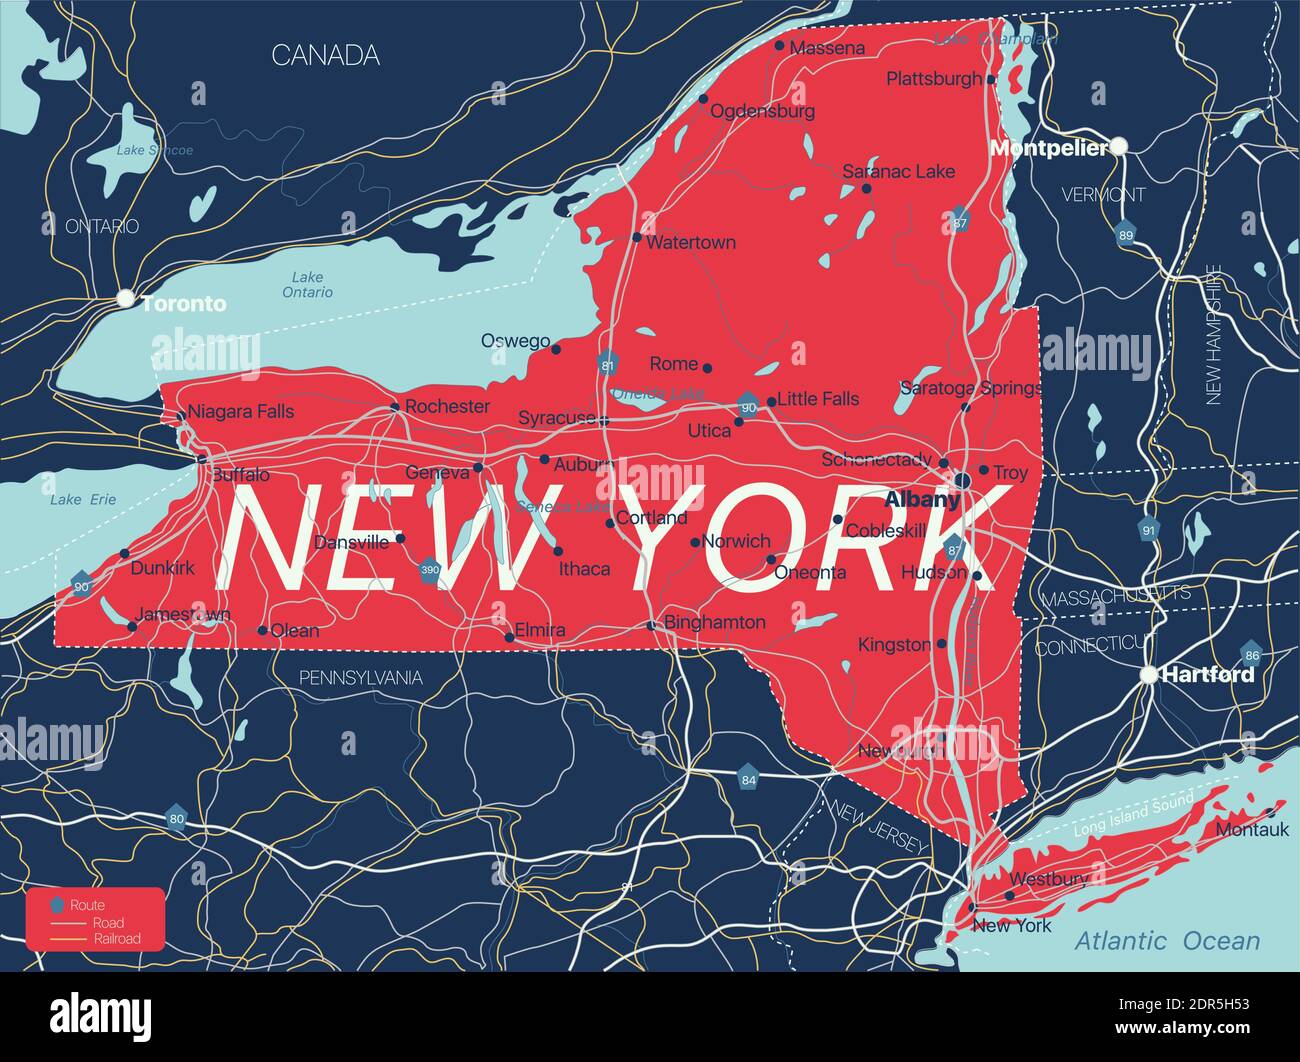 Mapa detallado editable del estado de Nueva York con ciudades y pueblos, sitios geográficos, carreteras, ferrocarriles, carreteras interestatales y autopistas de EE.UU. Archivo vectorial EPS-10, tren Ilustración del Vector